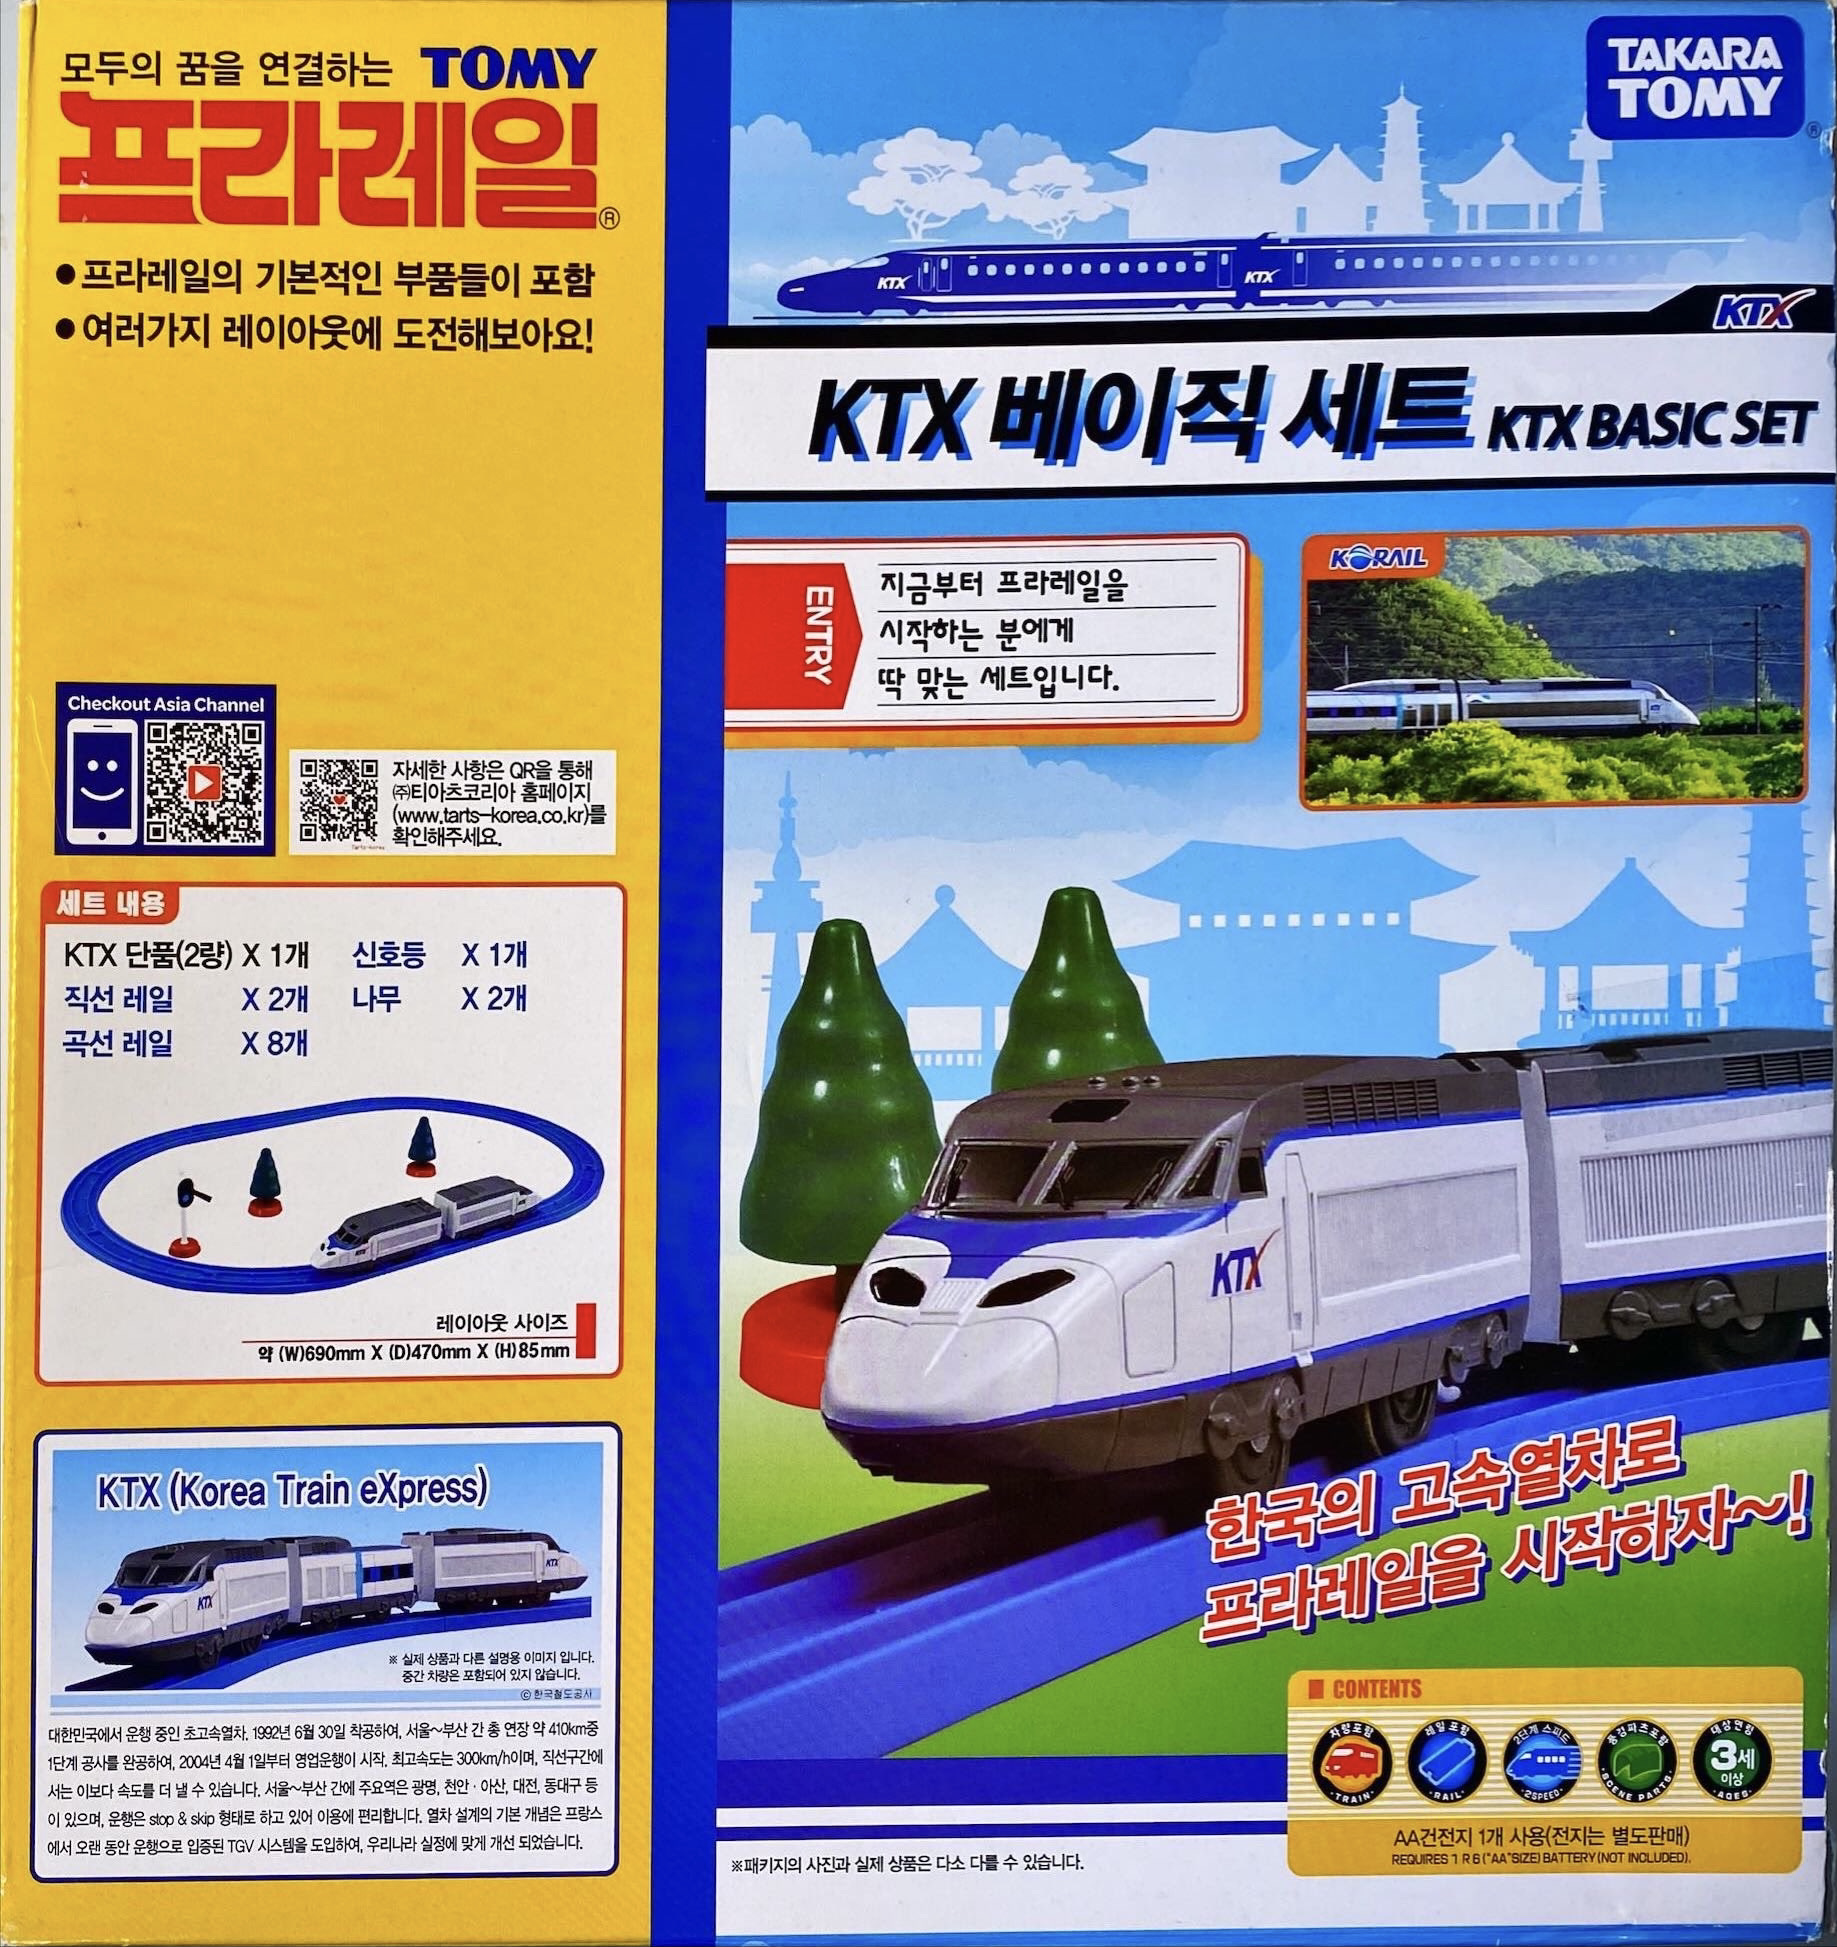 韓国高速鉄道 KTX 車内グッズセット